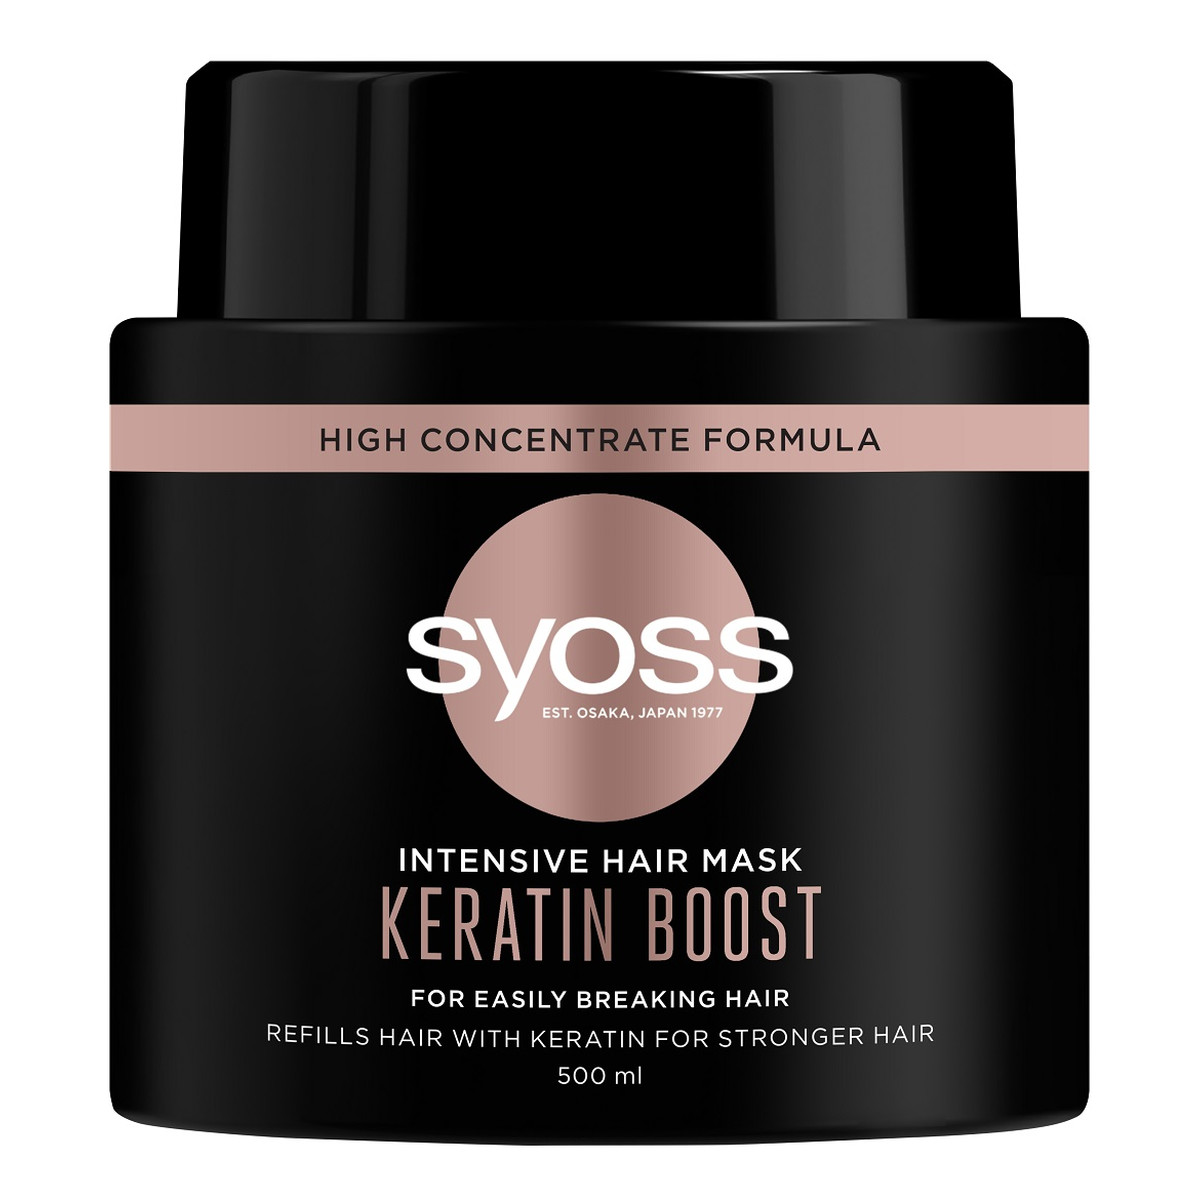 Syoss Intensive hair mask keratin boost intensywnie regenerująca maska do włosów bardzo łamliwych 500ml